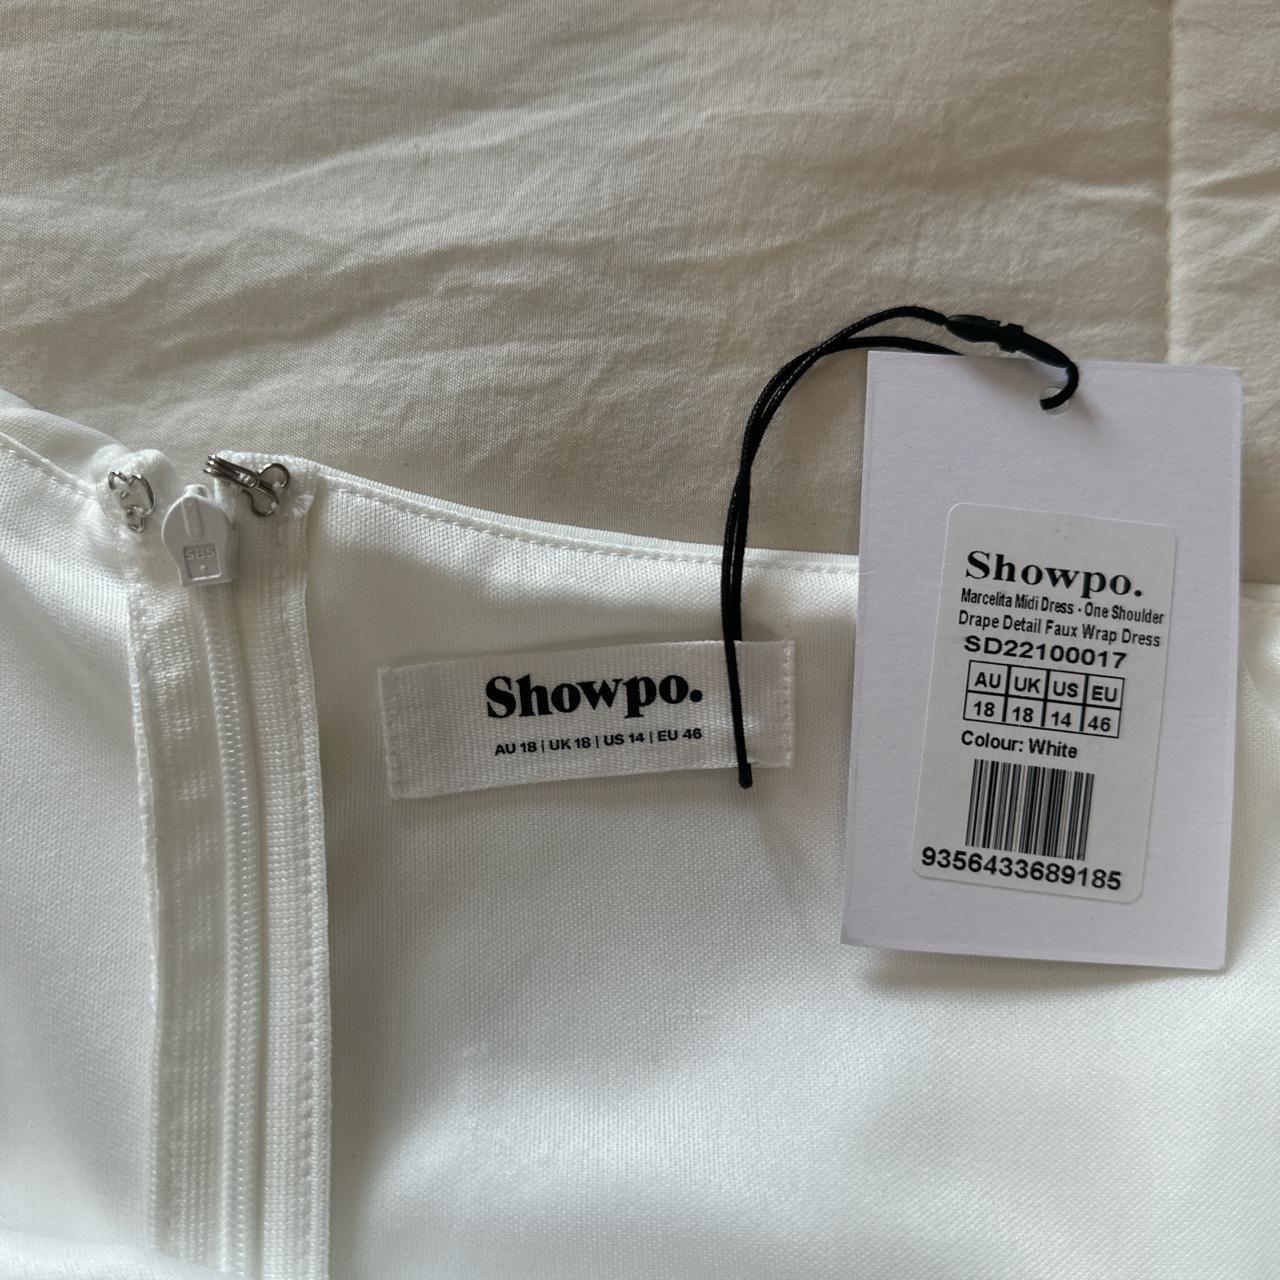 Marcelita Midi Dress - One Shoulder Drape Detail Faux Wrap Dress in White